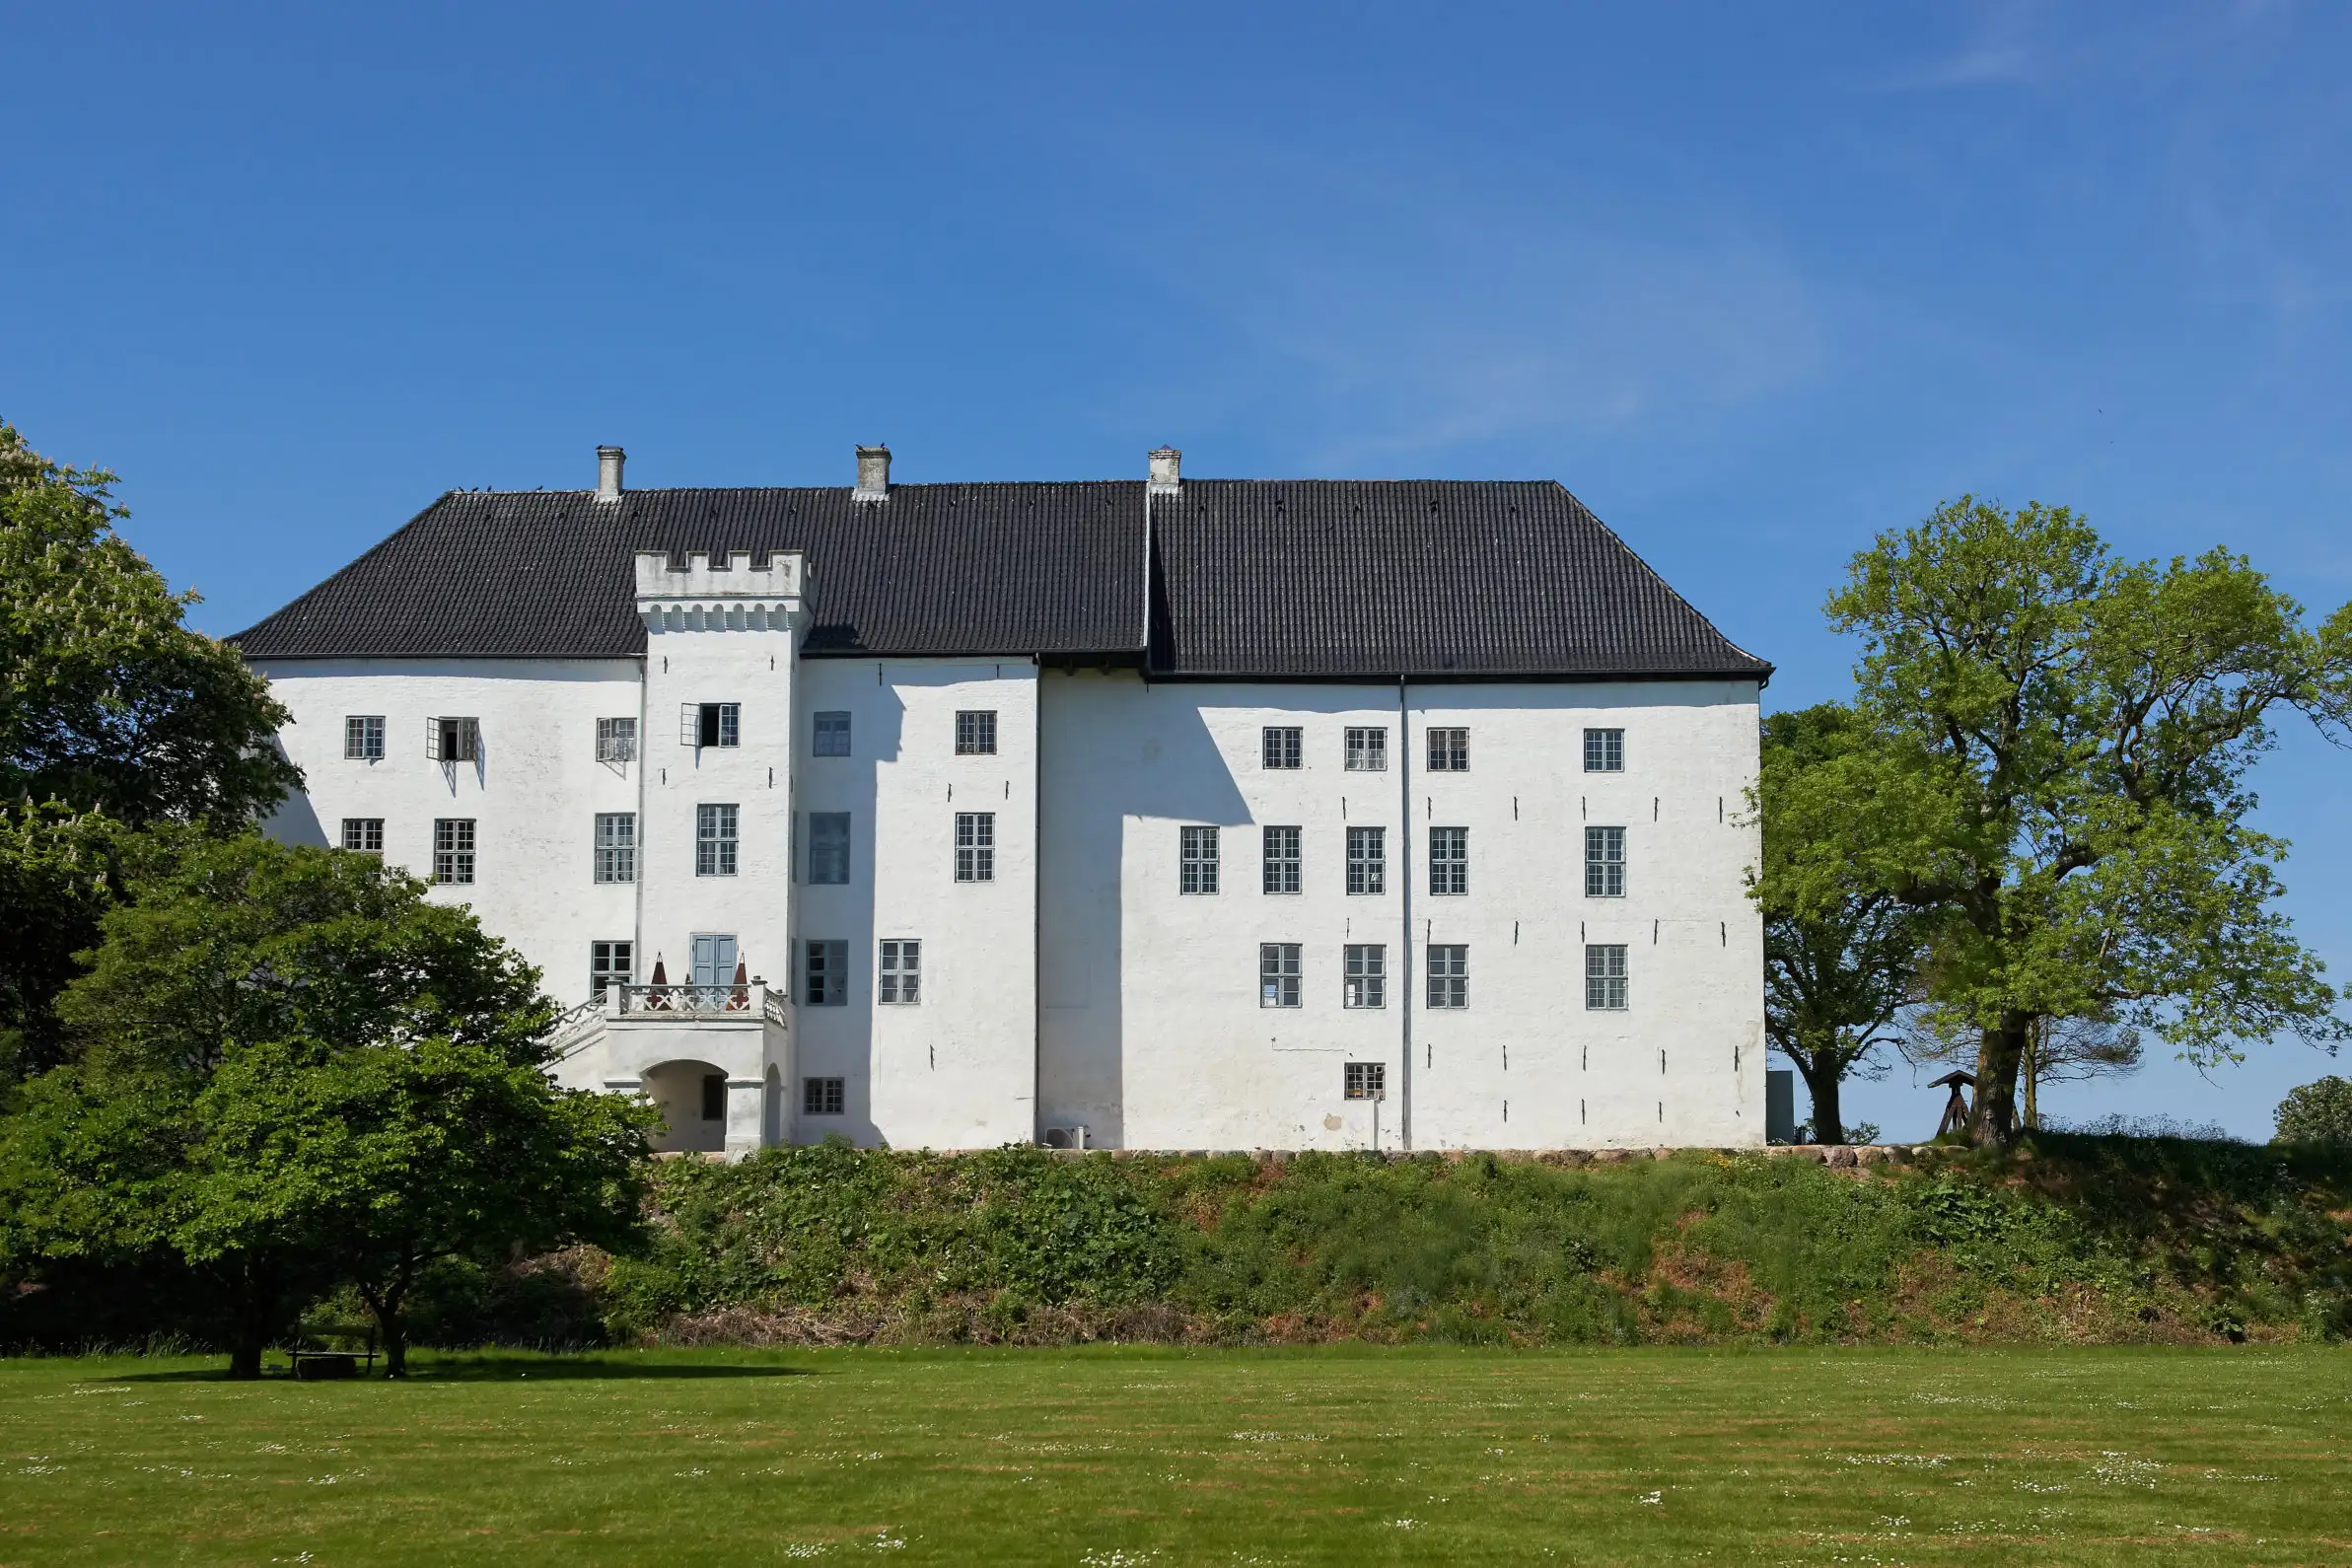 Exterior of Dragsholm Castle, one of the oldest castles in Denmark